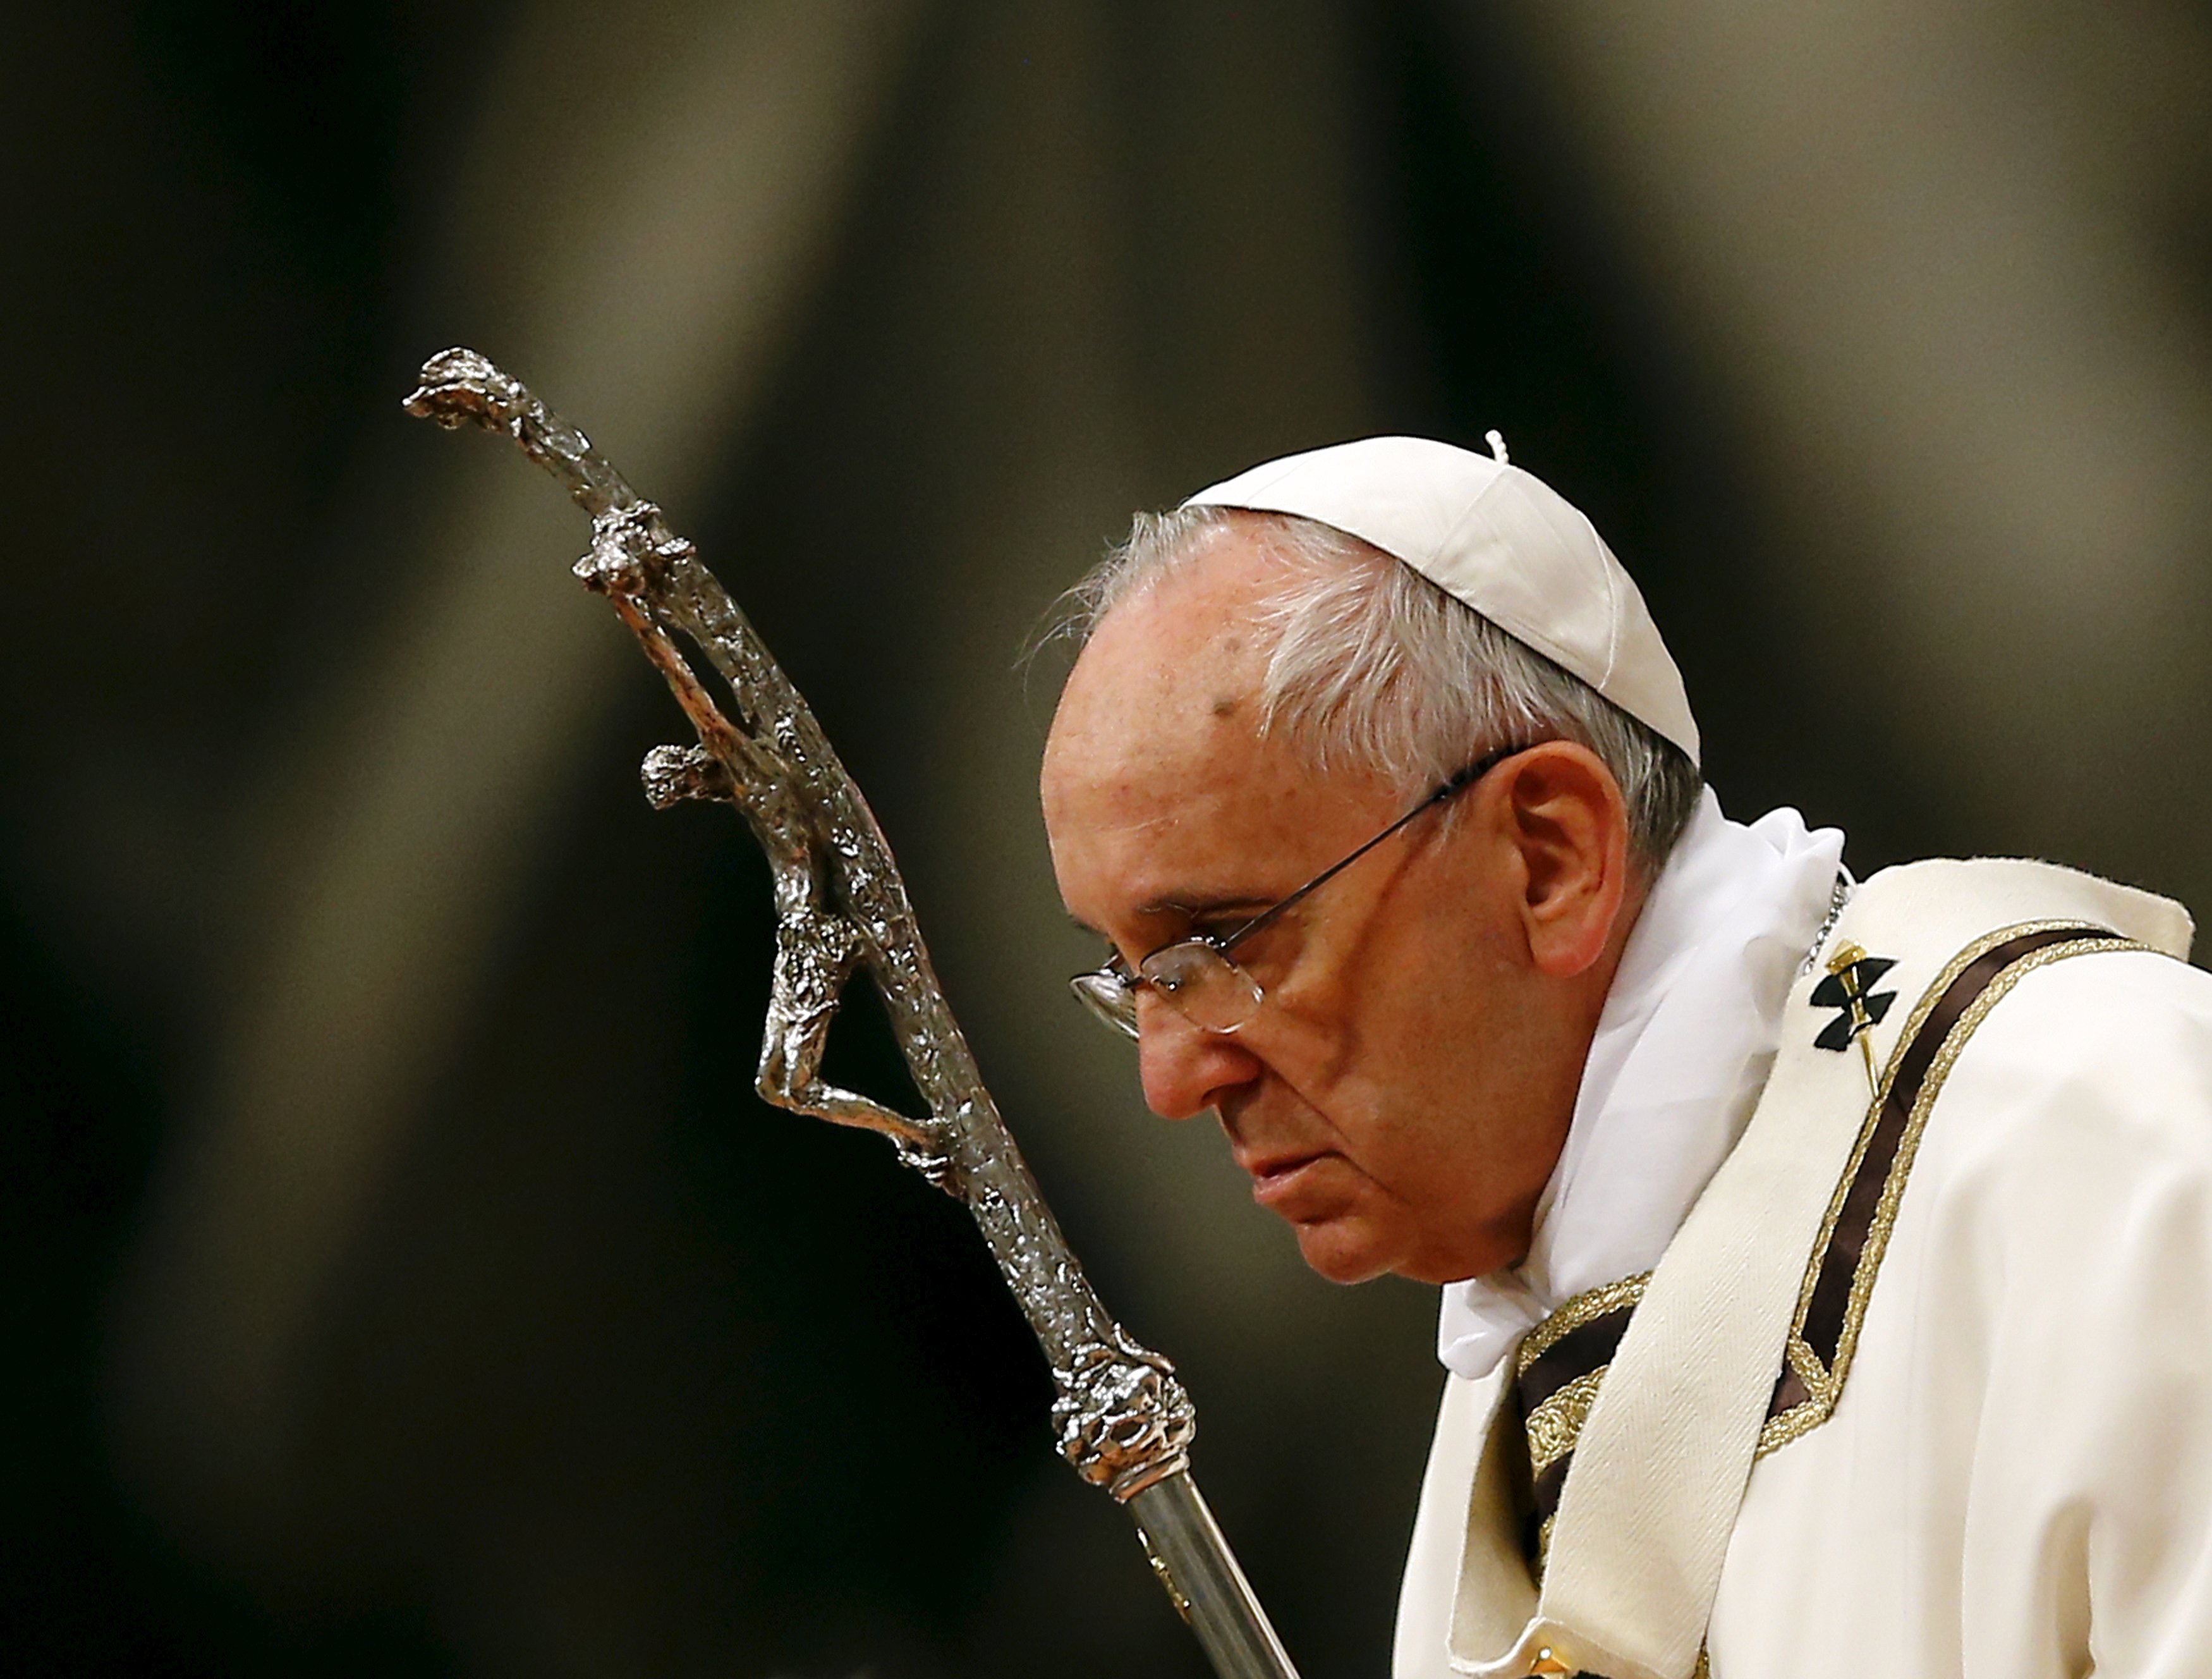 El papa Francisco a Turquía: El camino de la Iglesia es la franqueza